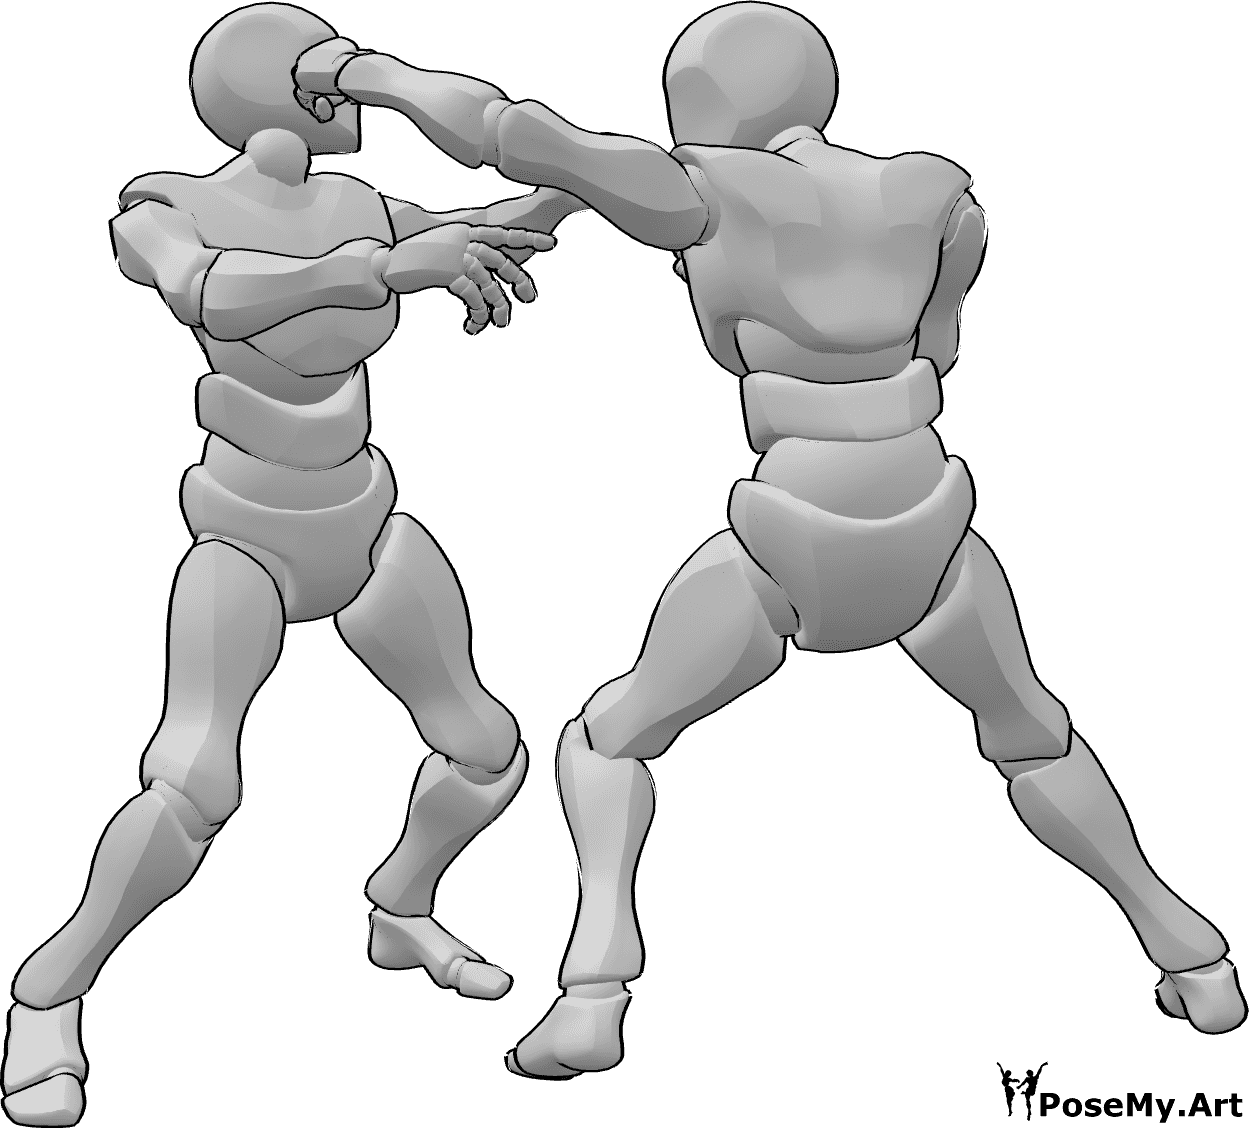 Referência de poses- Pose de soco na cabeça - Os machos estão a lutar, um bate na cabeça do outro em pose